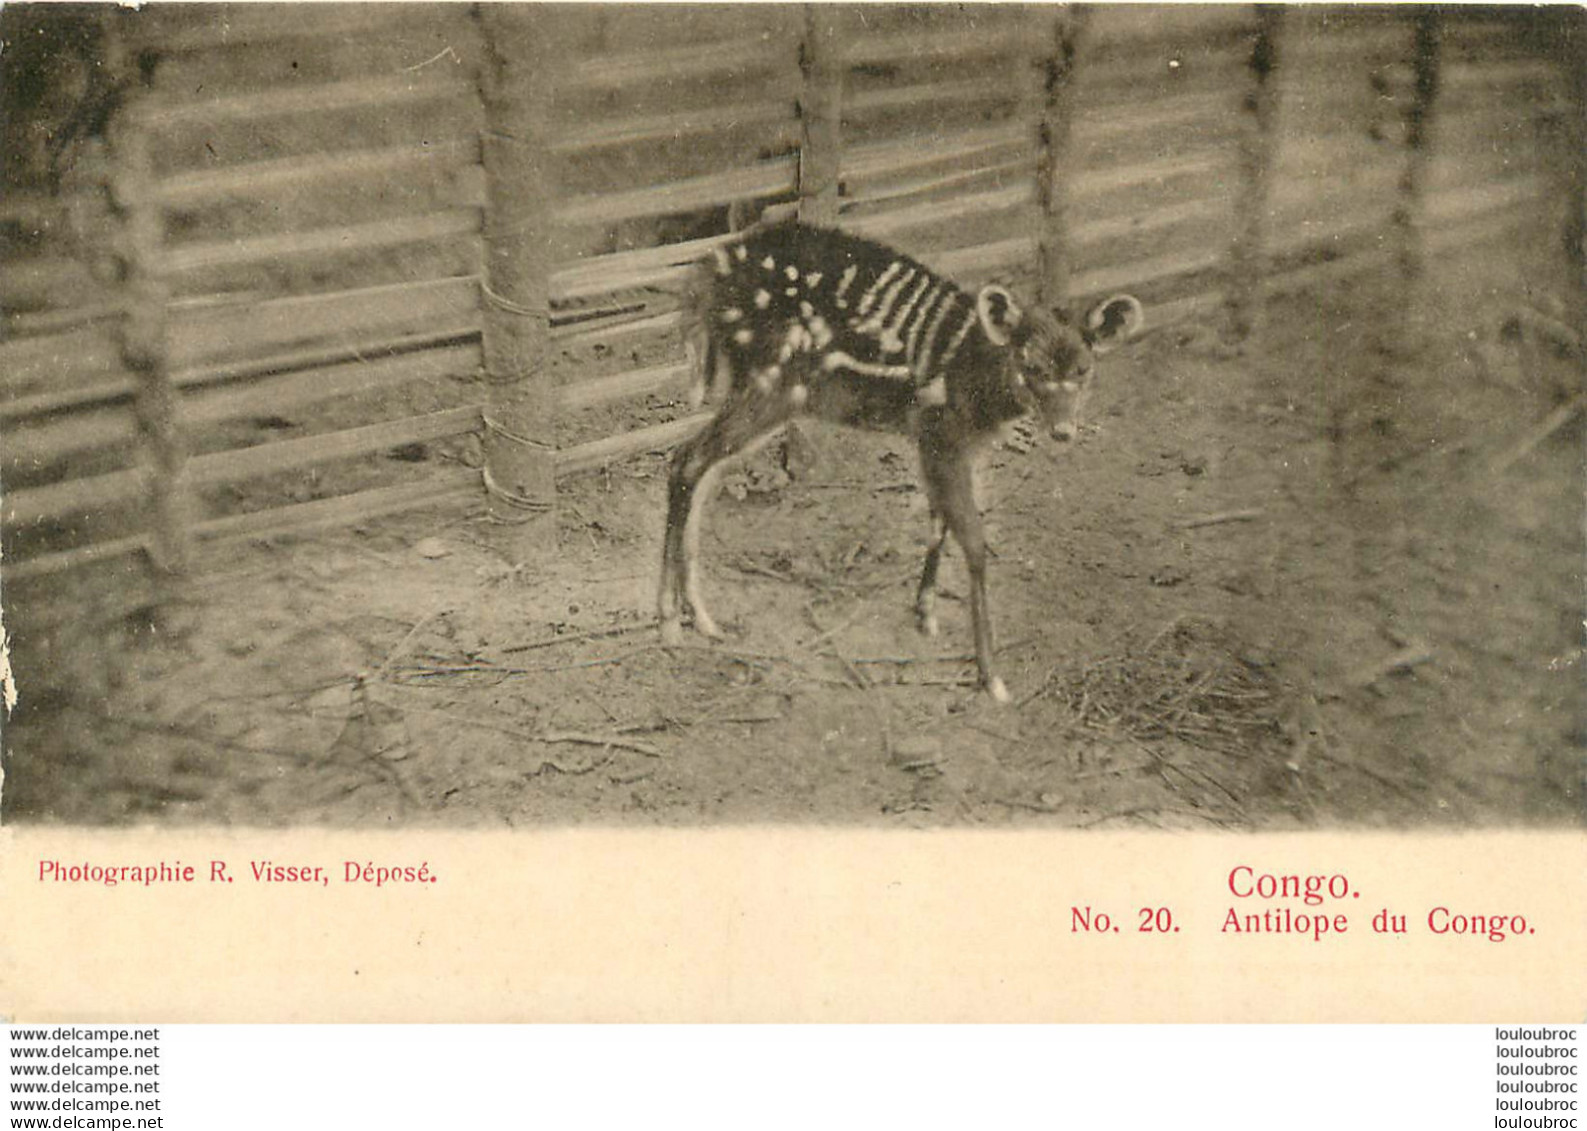 CONGO FRANCAIS ANTILOPE DU CONGO EDITION VISSER - French Congo